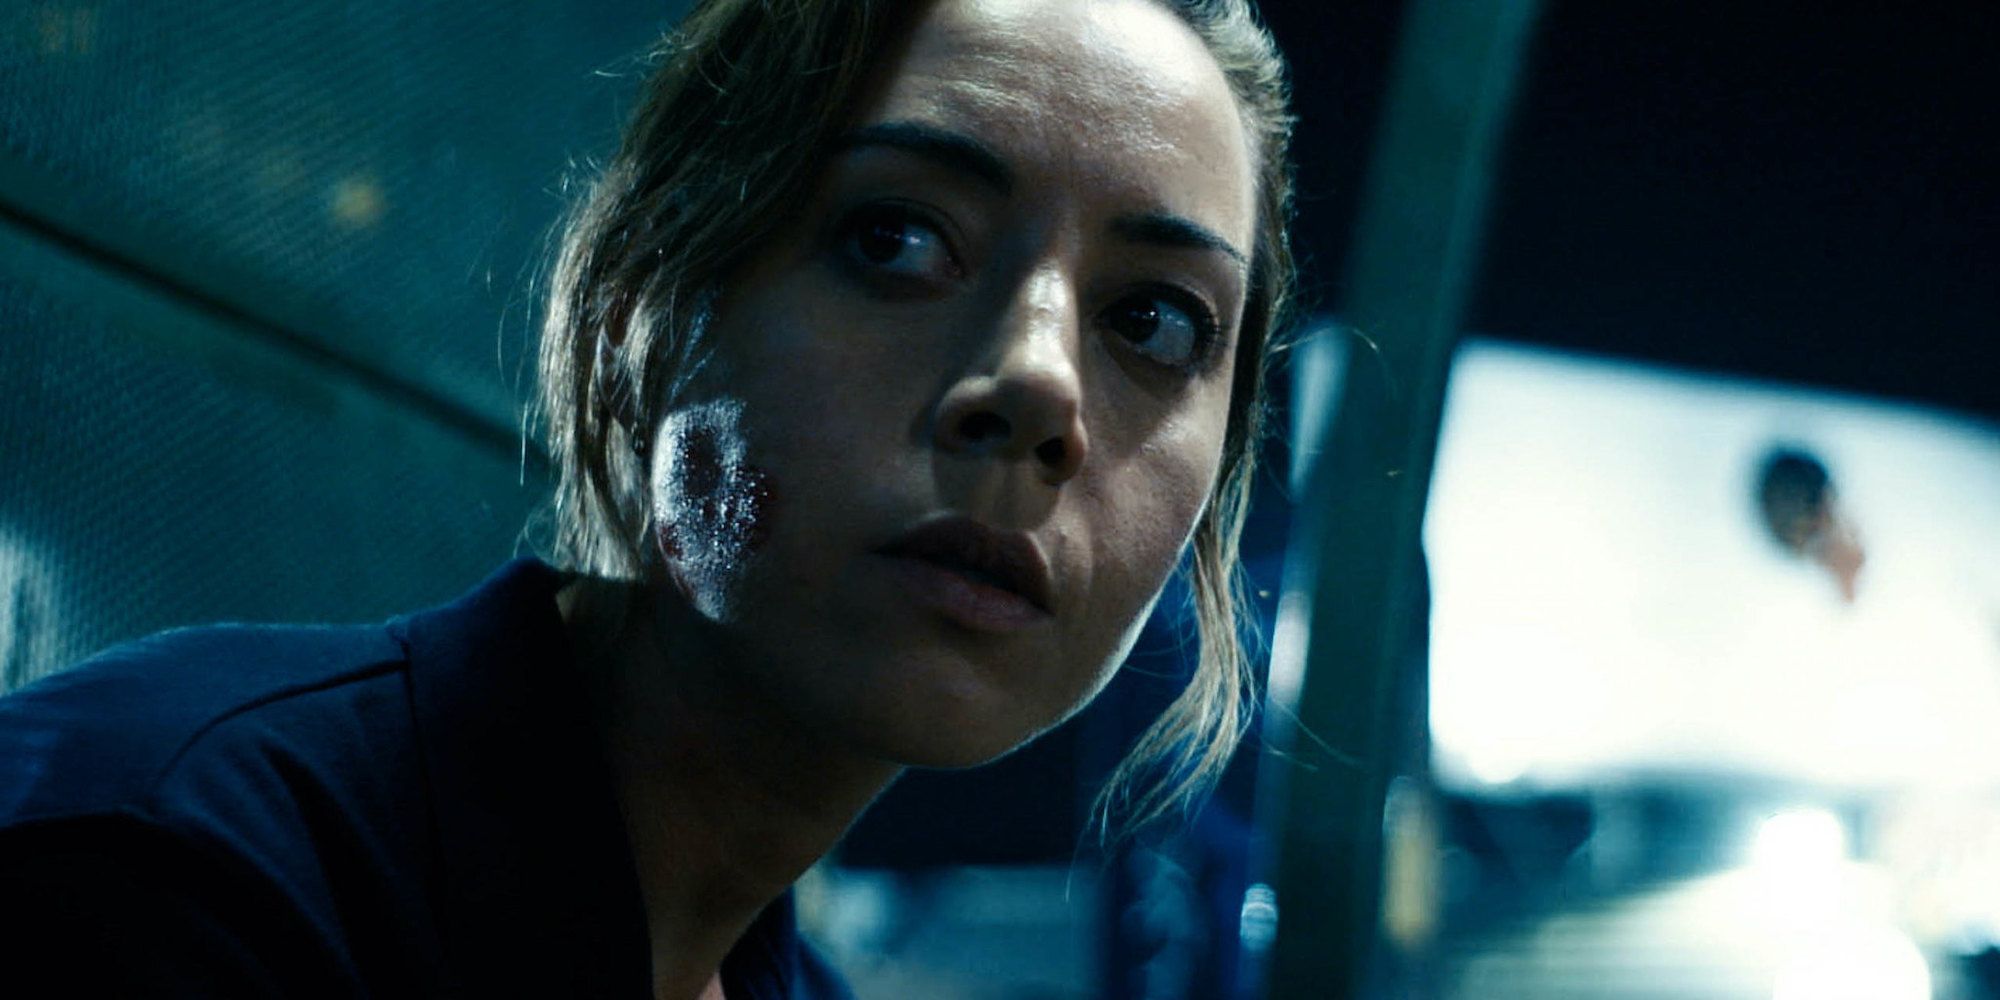 Emily The Criminal Review: Aubrey Plaza hace un trabajo impresionante en un thriller intenso [Sundance]